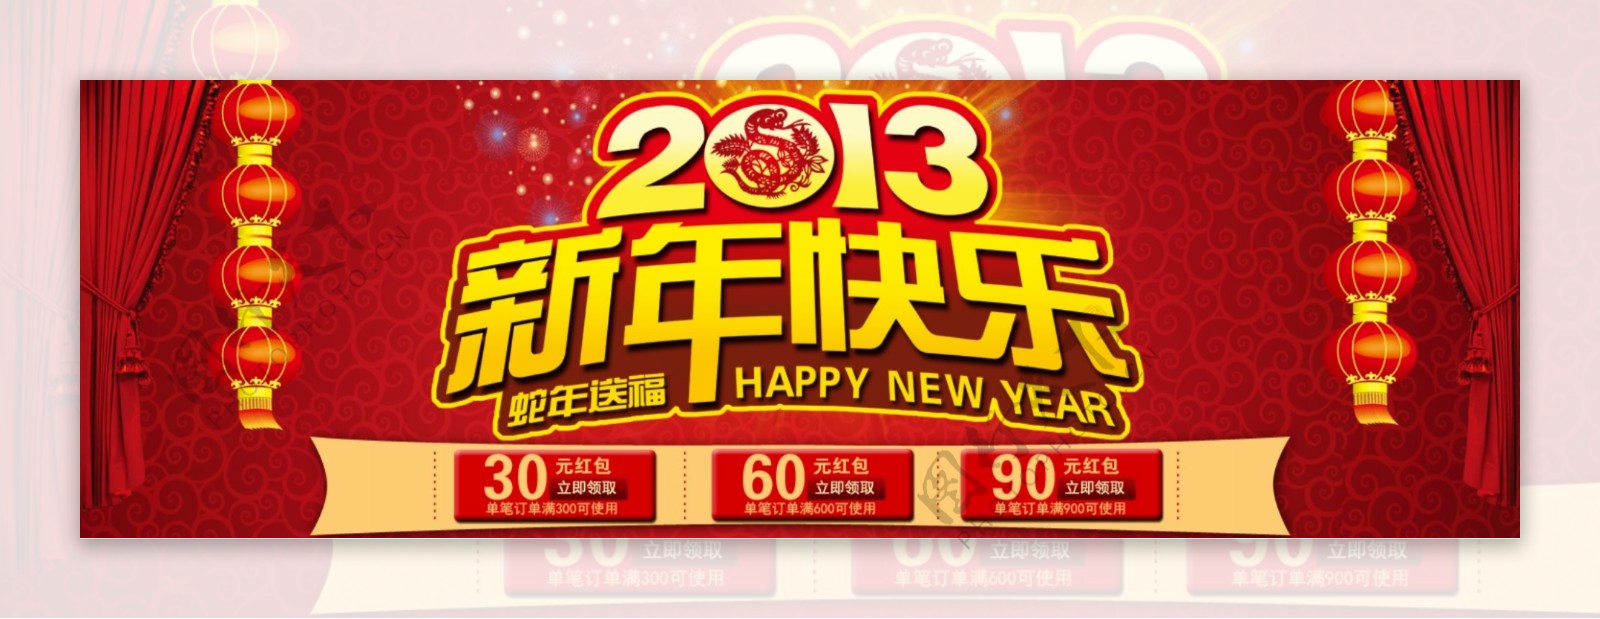 2013新年快乐图片